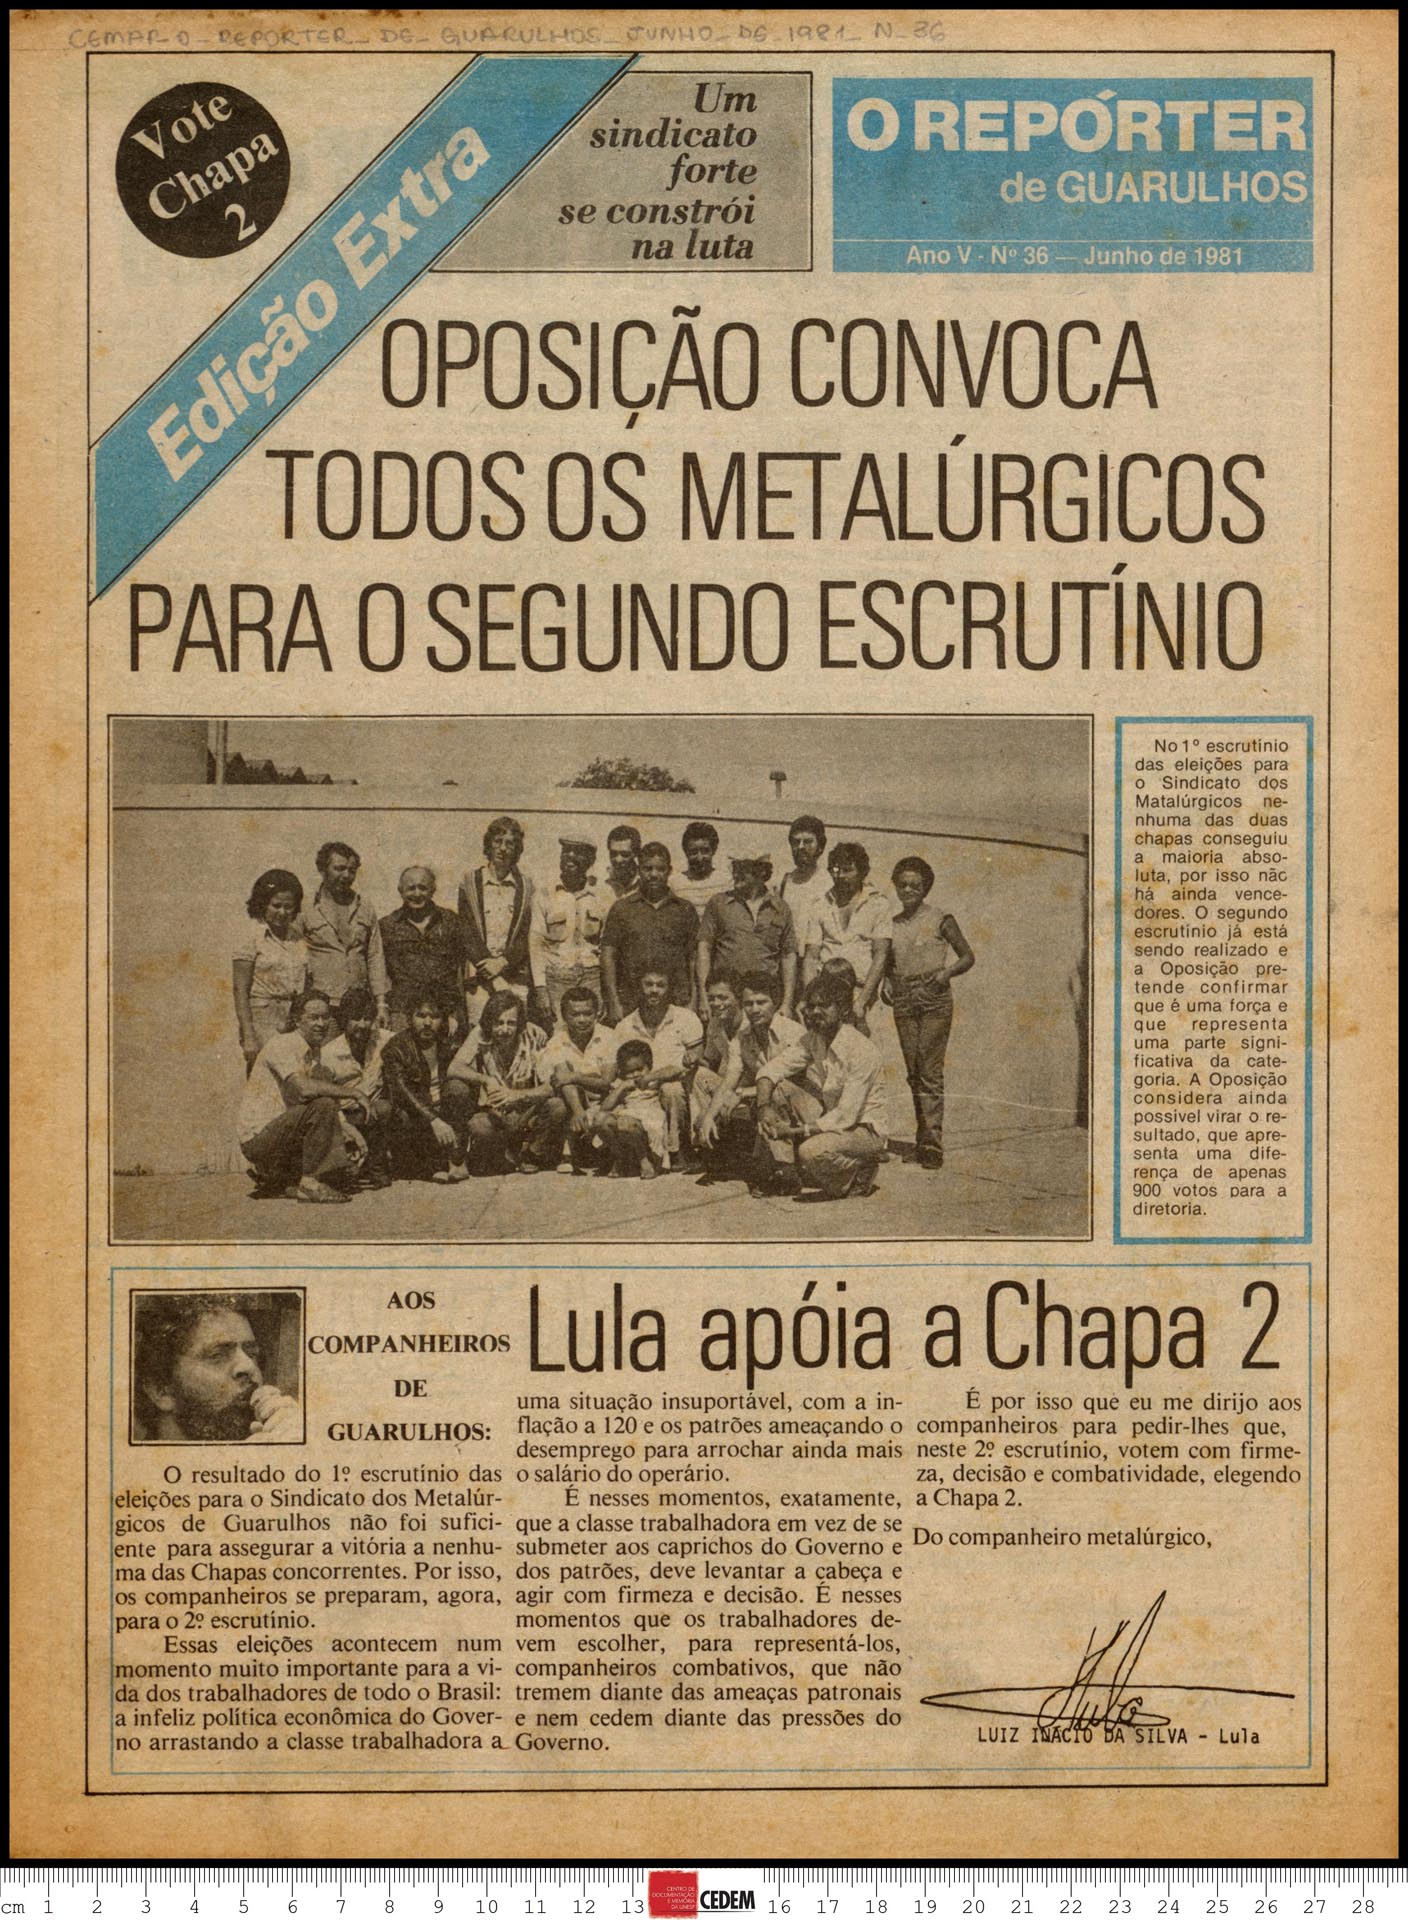 O reportér de Guarulhos - 36 - jun. 1981